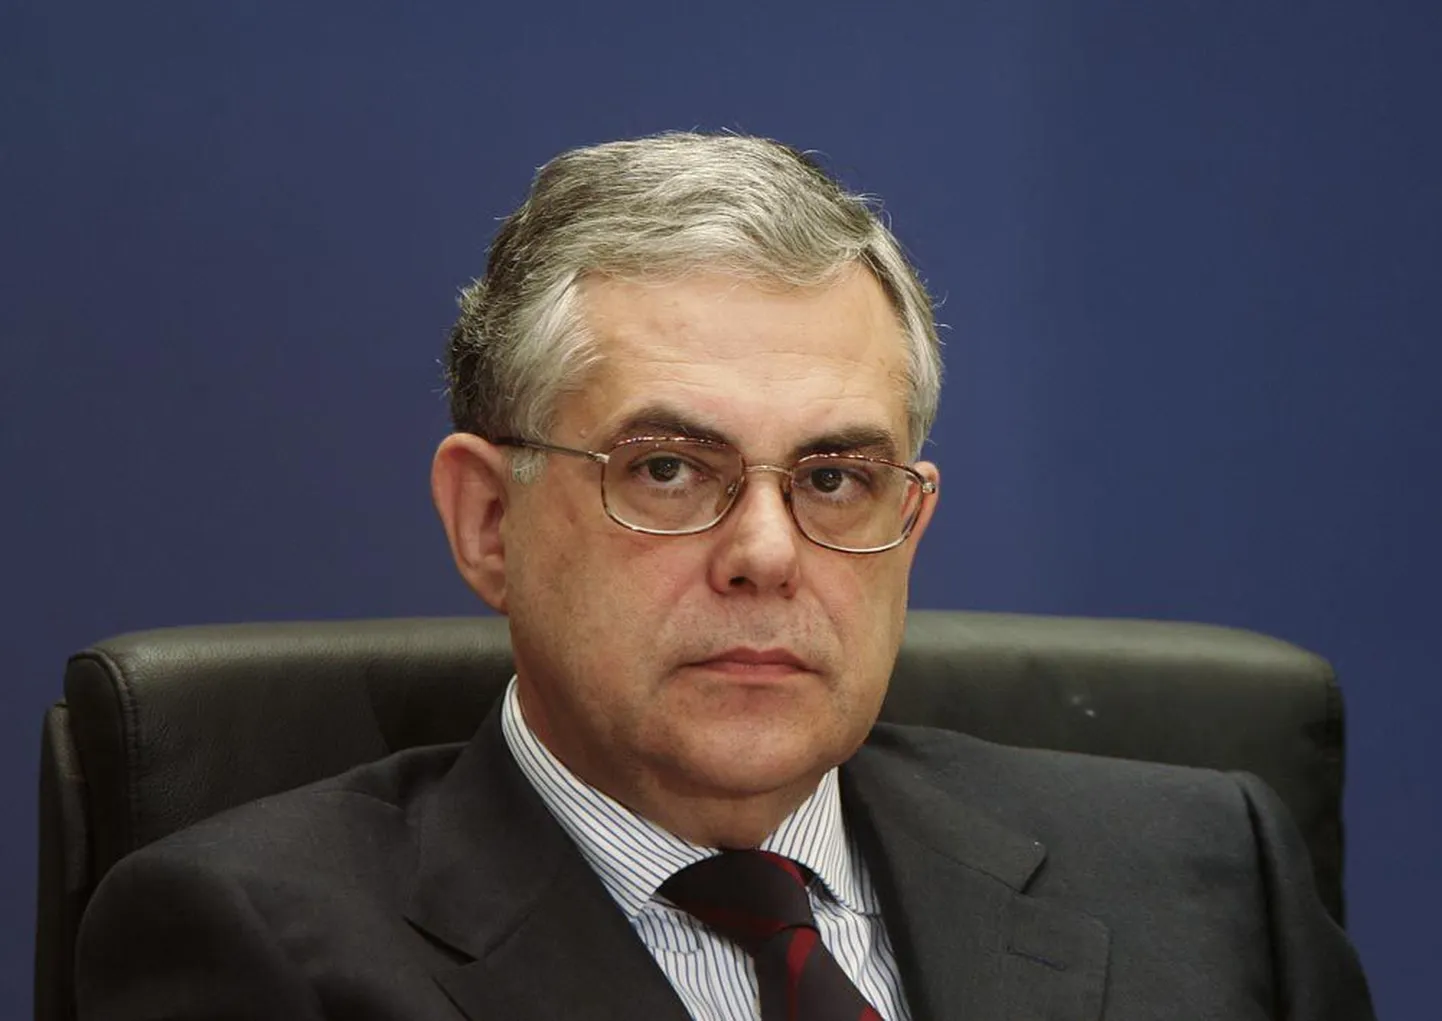 Kreeka peaminister Lucas Papademos